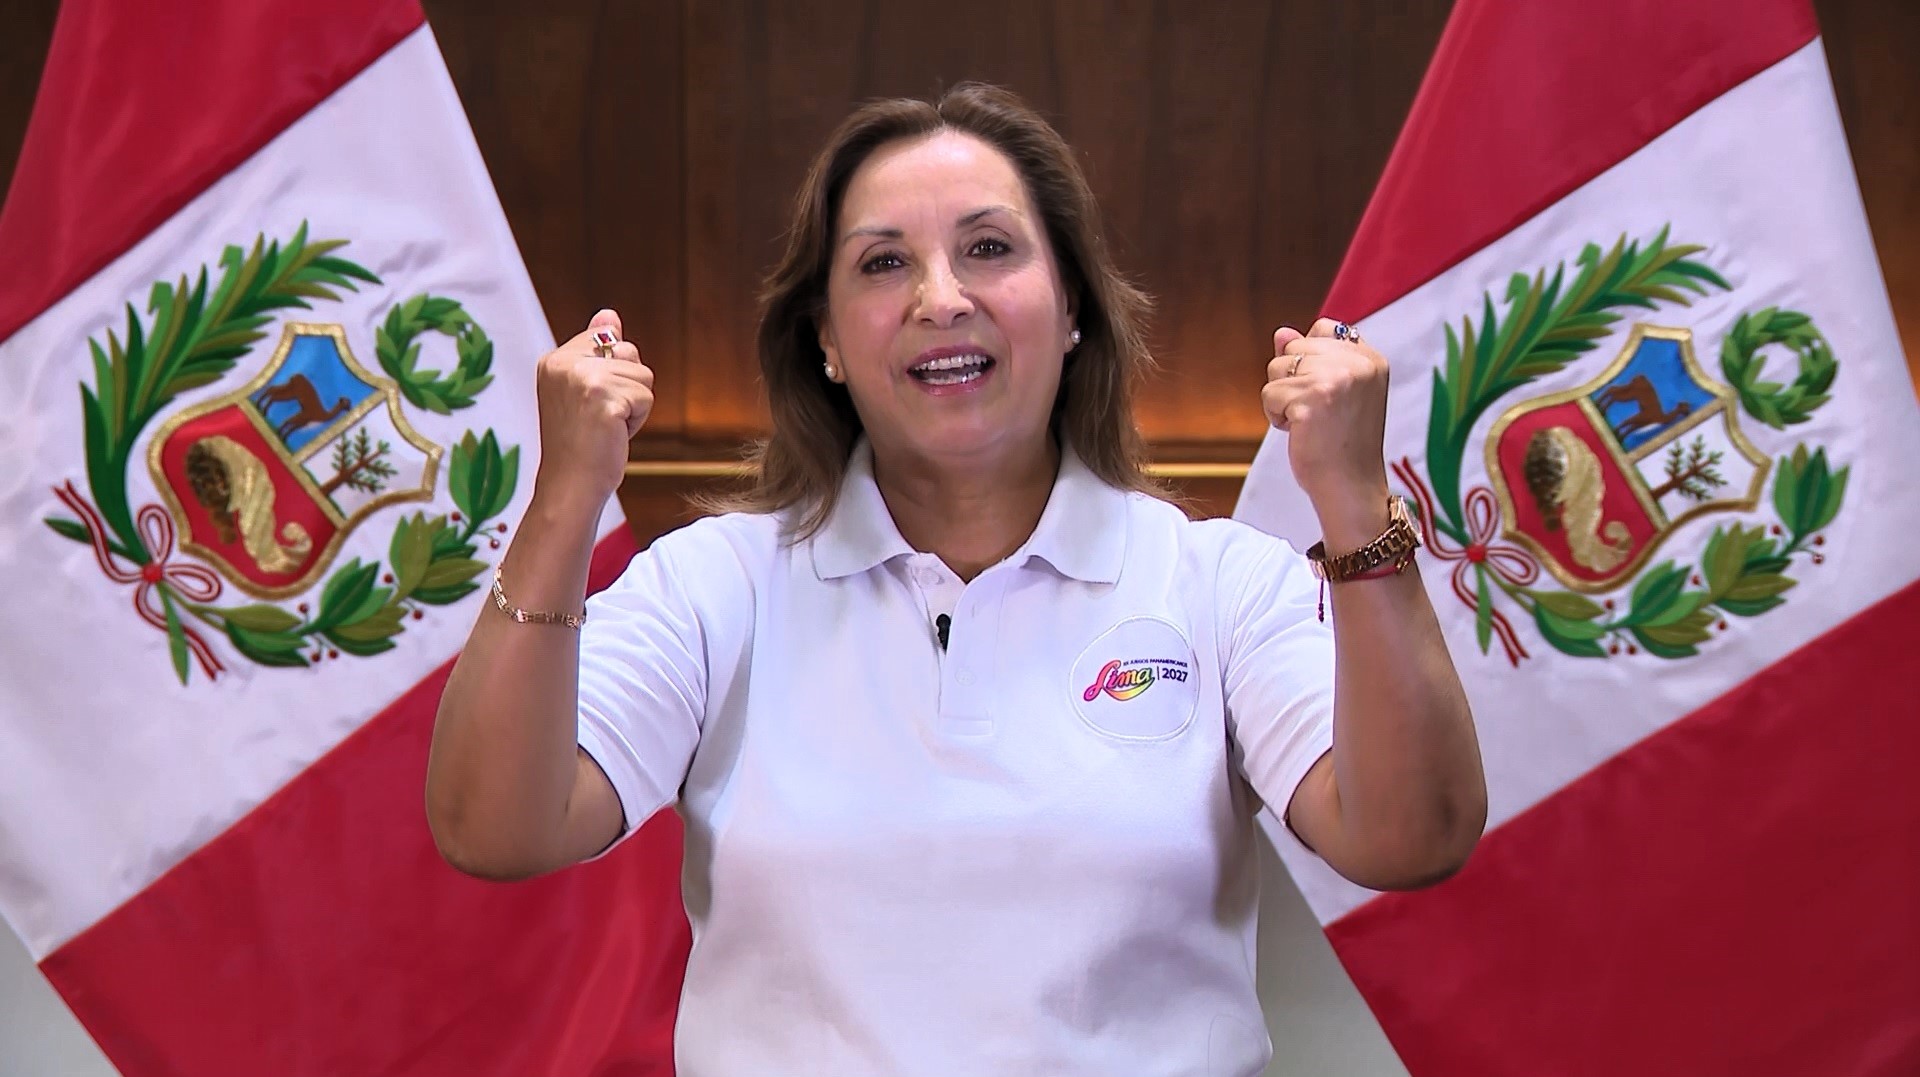 Gobierno garantiza éxito y seguridad de Juegos Panamericanos y Parapanamericanos 2027, indicó en mensaje a la nación presidenta Dina Boluarte.